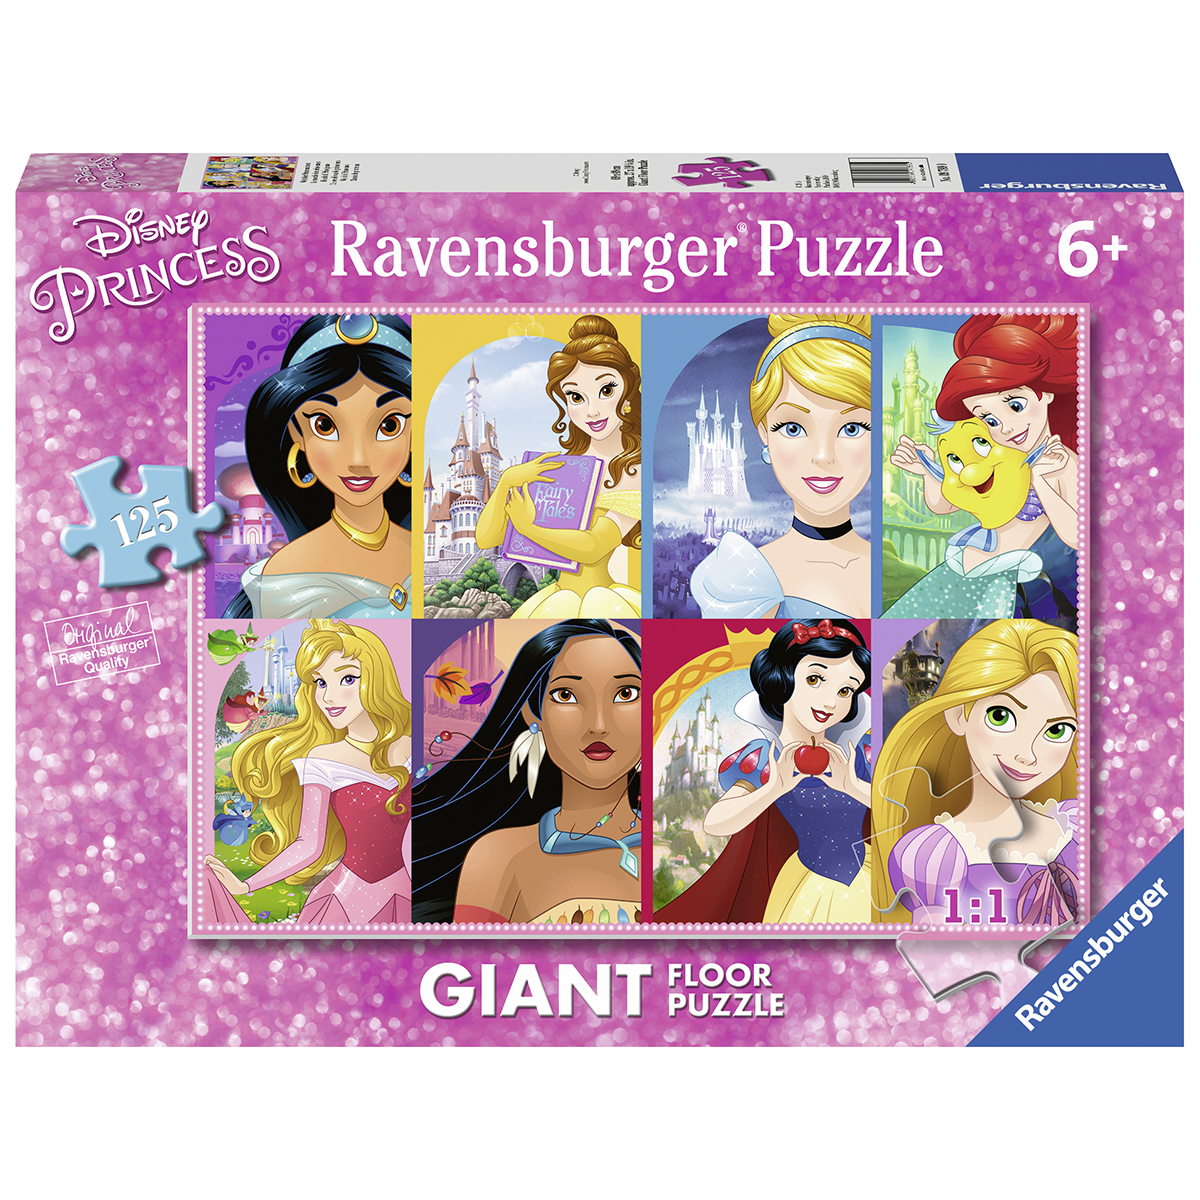 Ravensburger - puzzle 125 pezzi - formato giant – per bambini a partire dai 6 anni - disney princess – 09789 - DISNEY PRINCESS, RAVENSBURGER